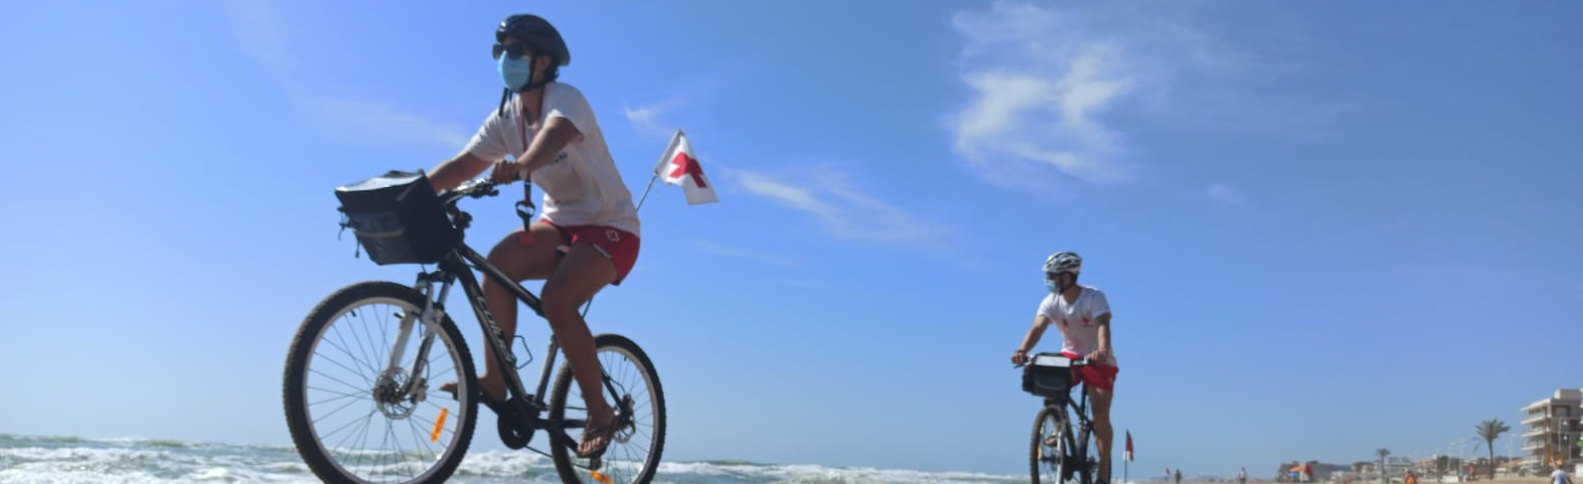 La bici, un mitjà de transport sostenible i solidari